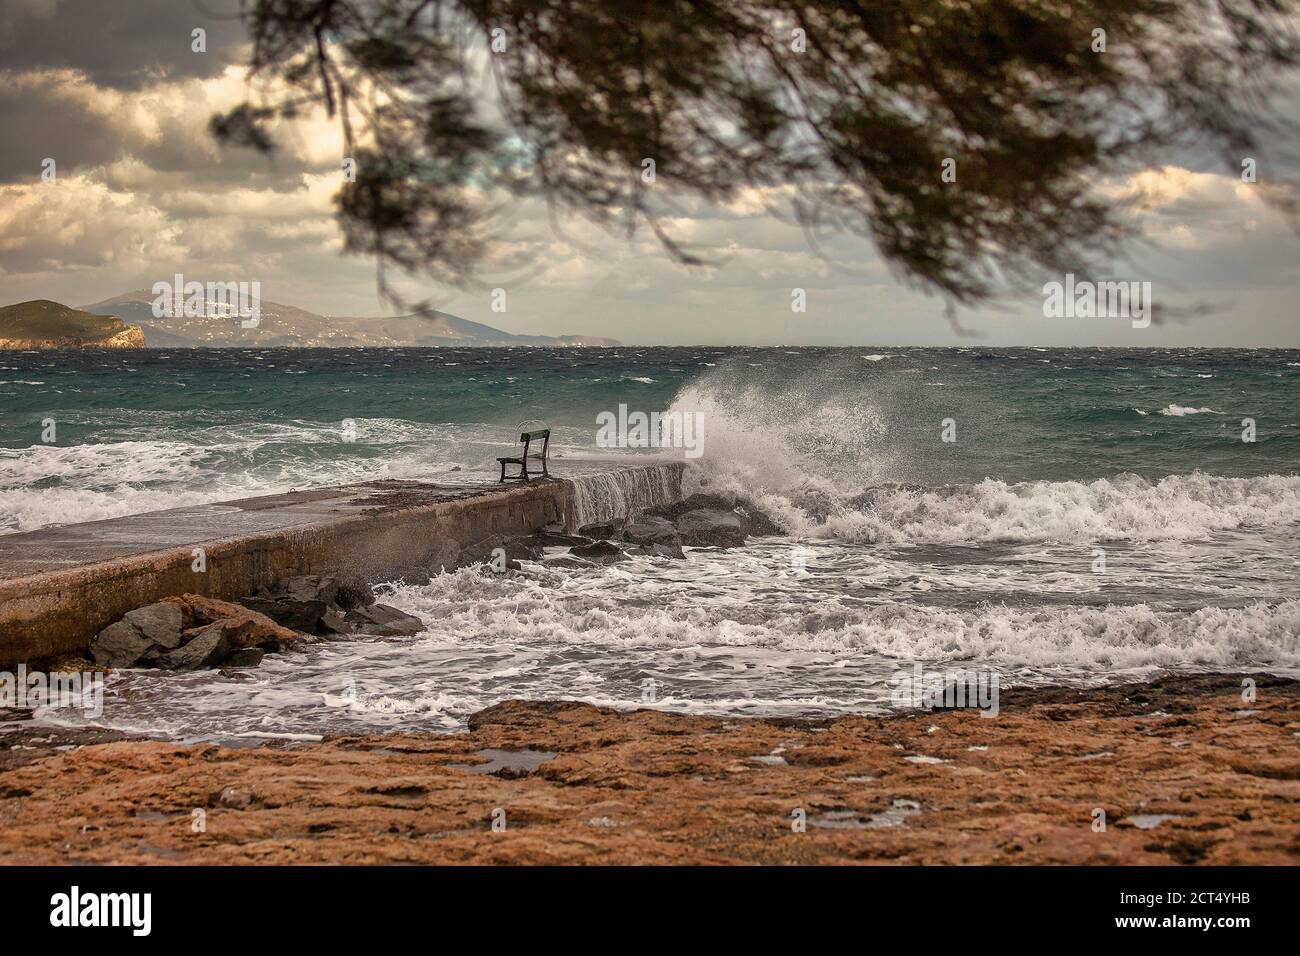 Seacoast Reiseziele. Winterszene mit Meerwasser, das auf einem Steg auf der Insel Syros planscht. Stockbild. Stockfoto